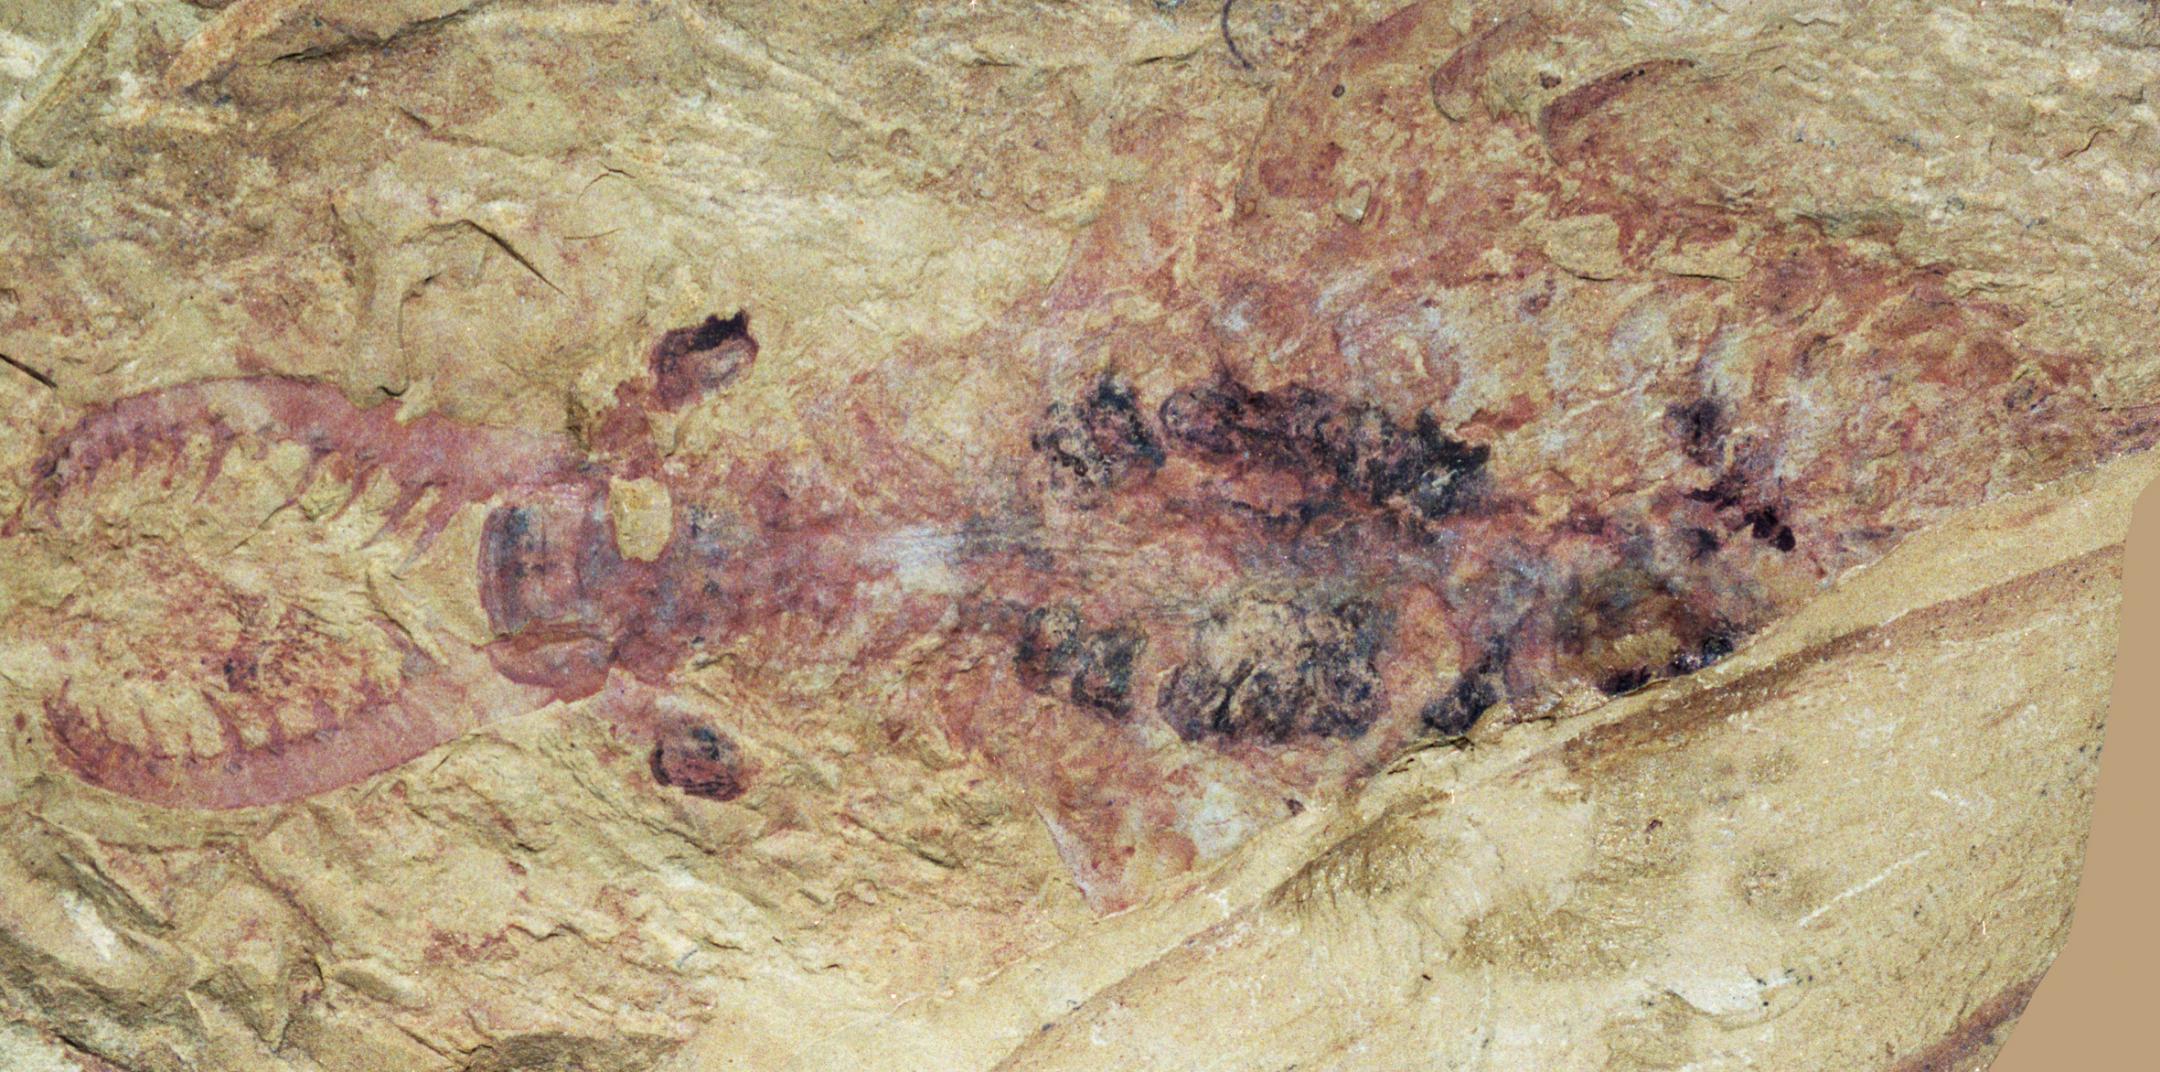 Fossil de l’Anomalocaris